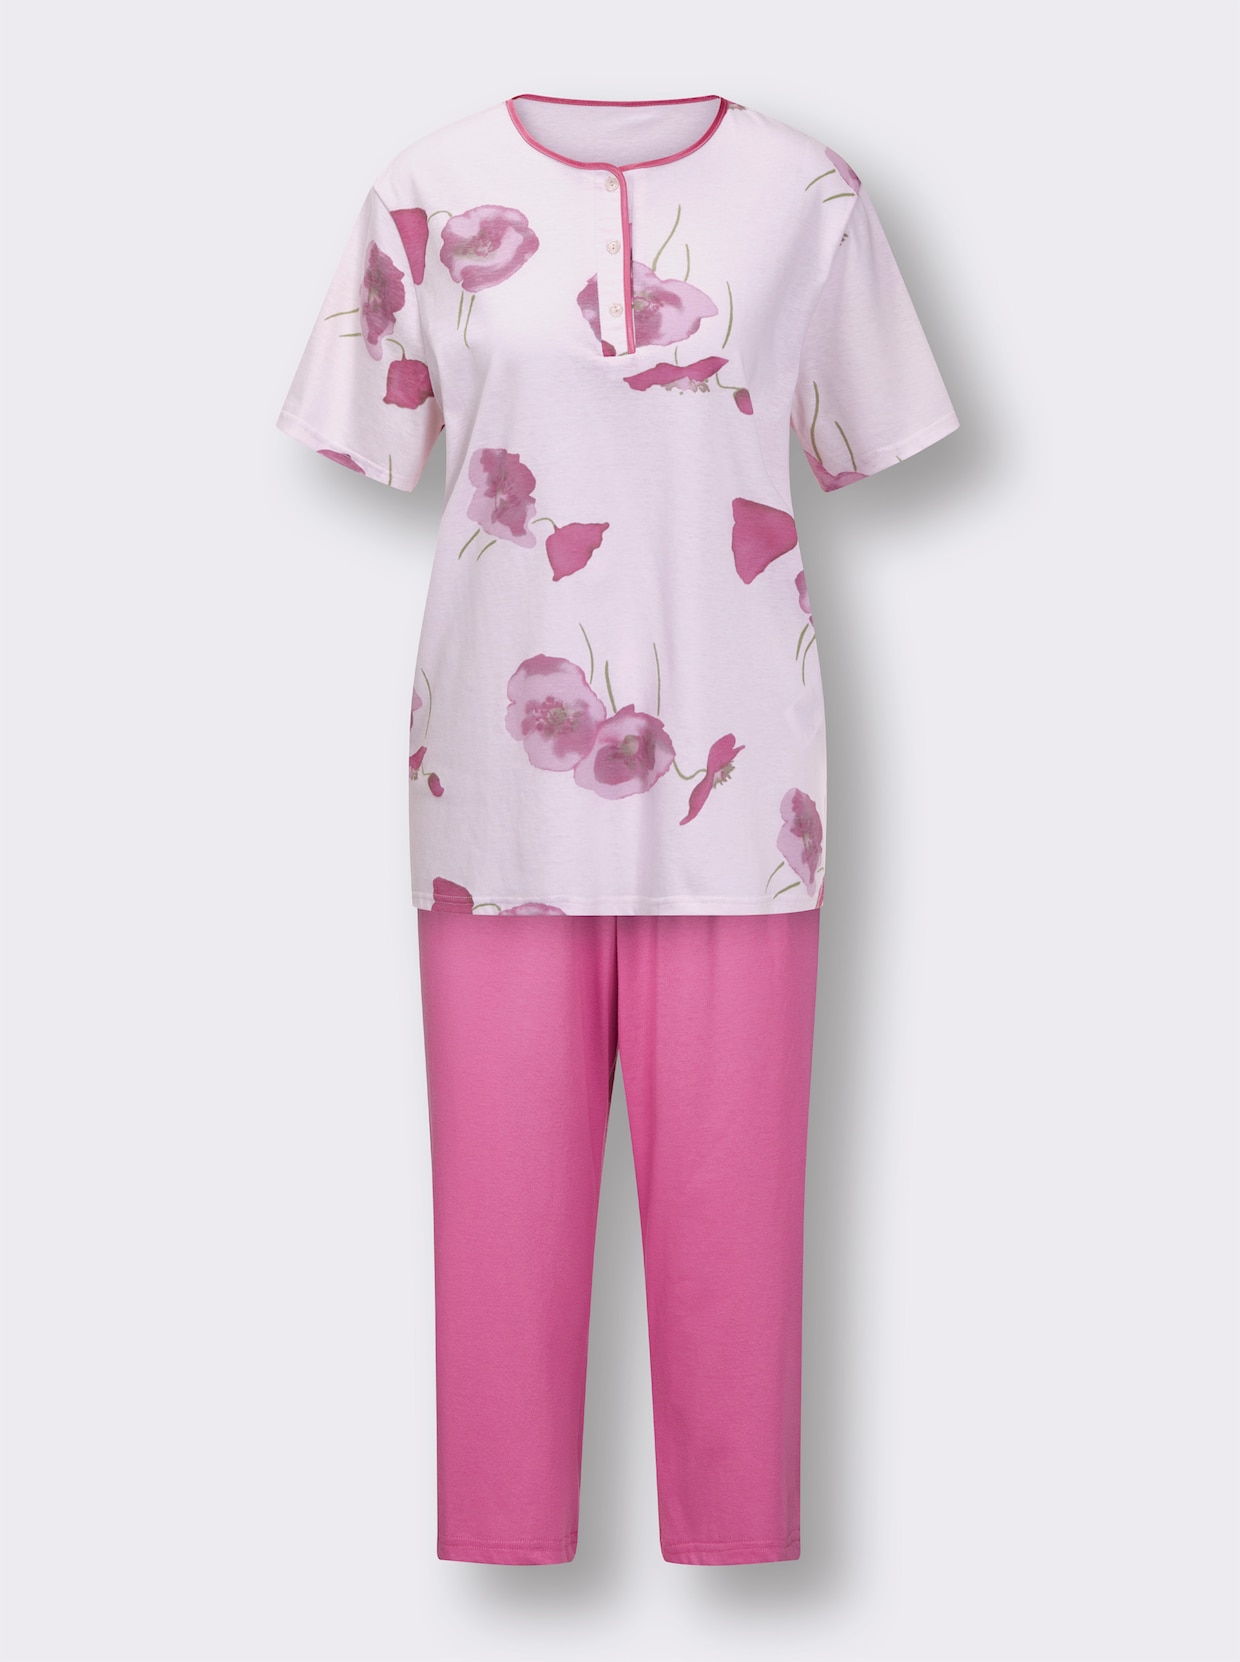 Capri kostýmek - růžový-potisk